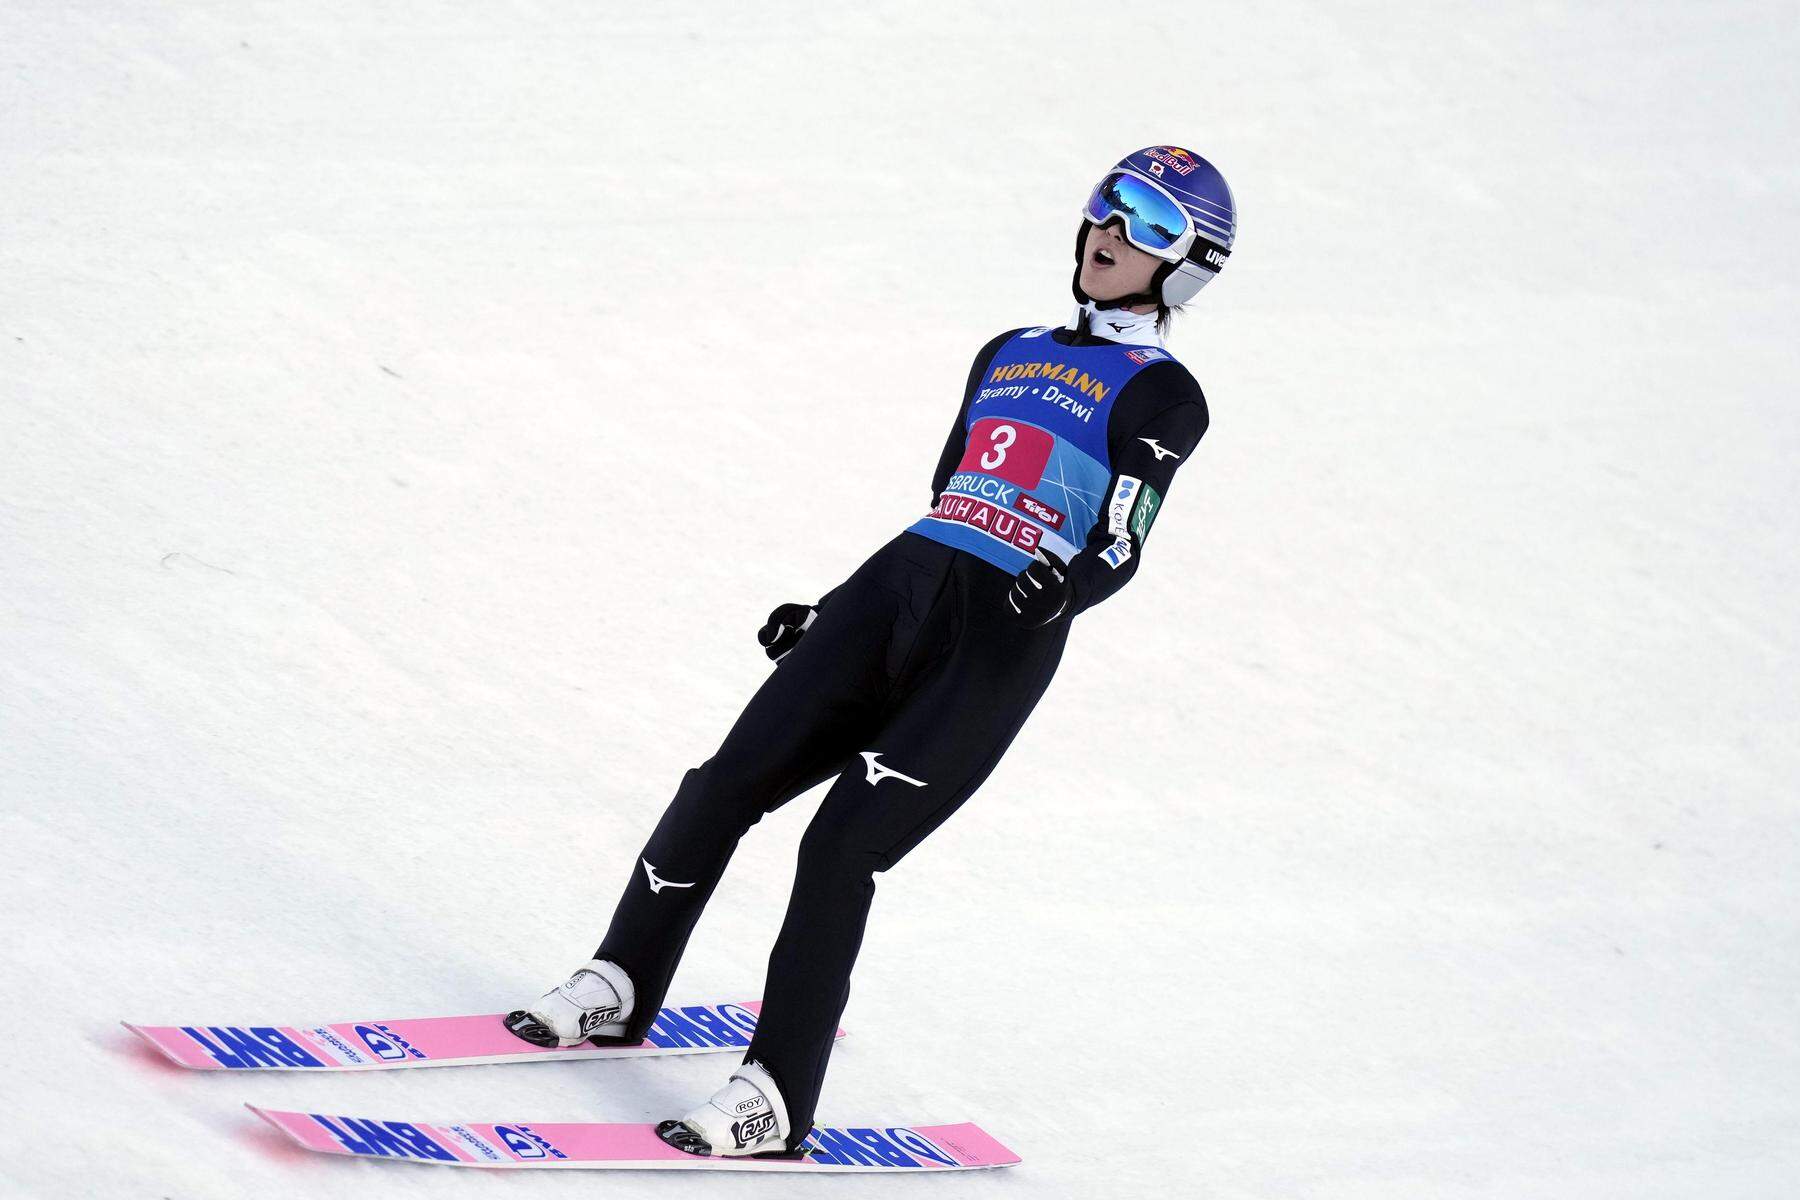 Skispringen | Ryoyu Kobayashi auf den Spuren des großen Janne Ahonen